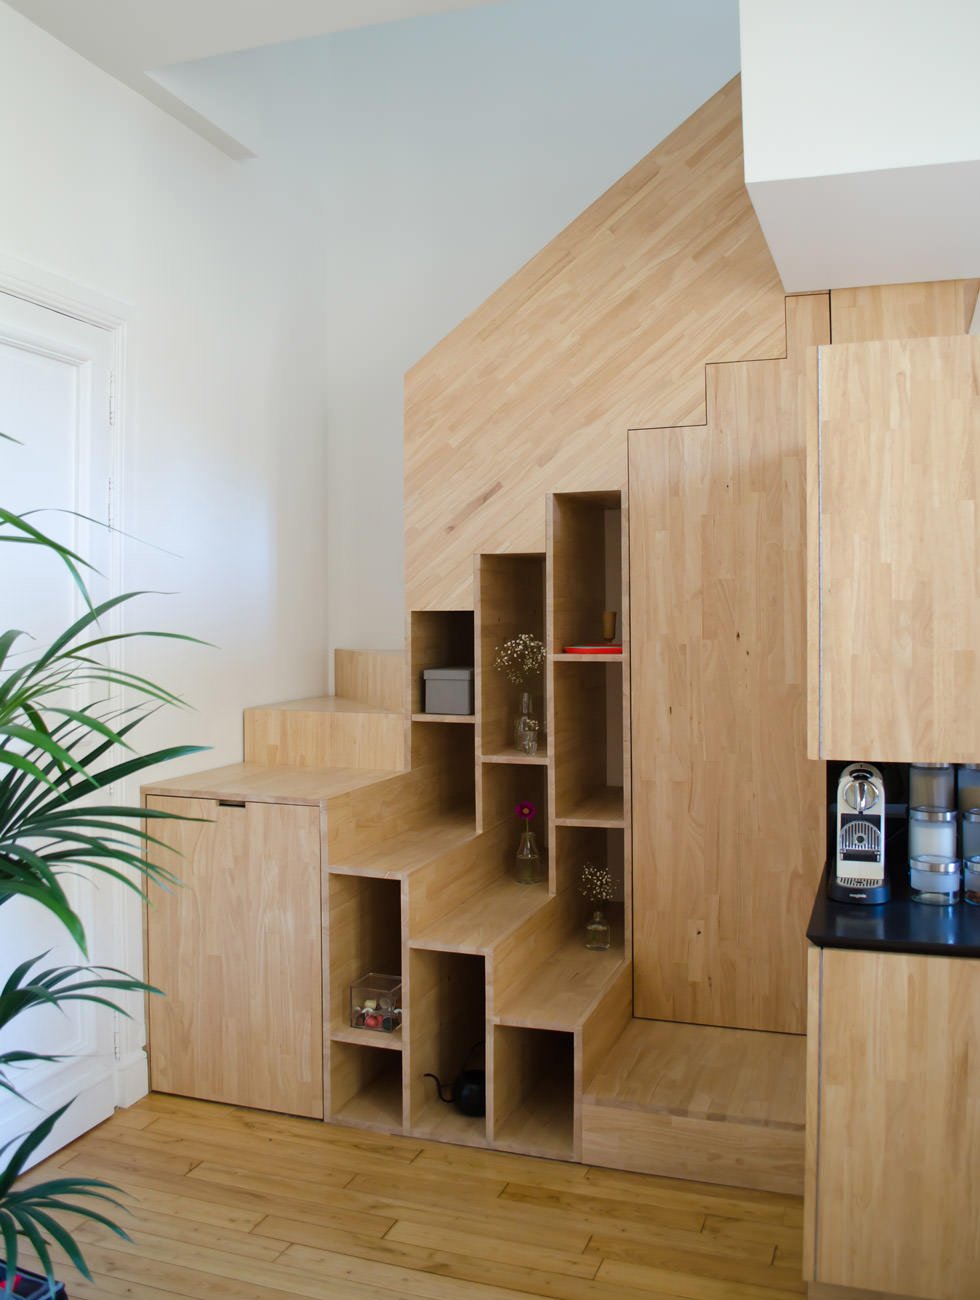 Scala in legno realizzata per sfruttare uno piccolo spazio - sono state ricavate una libreria, un armadietto e una scarpiera nell'angolo